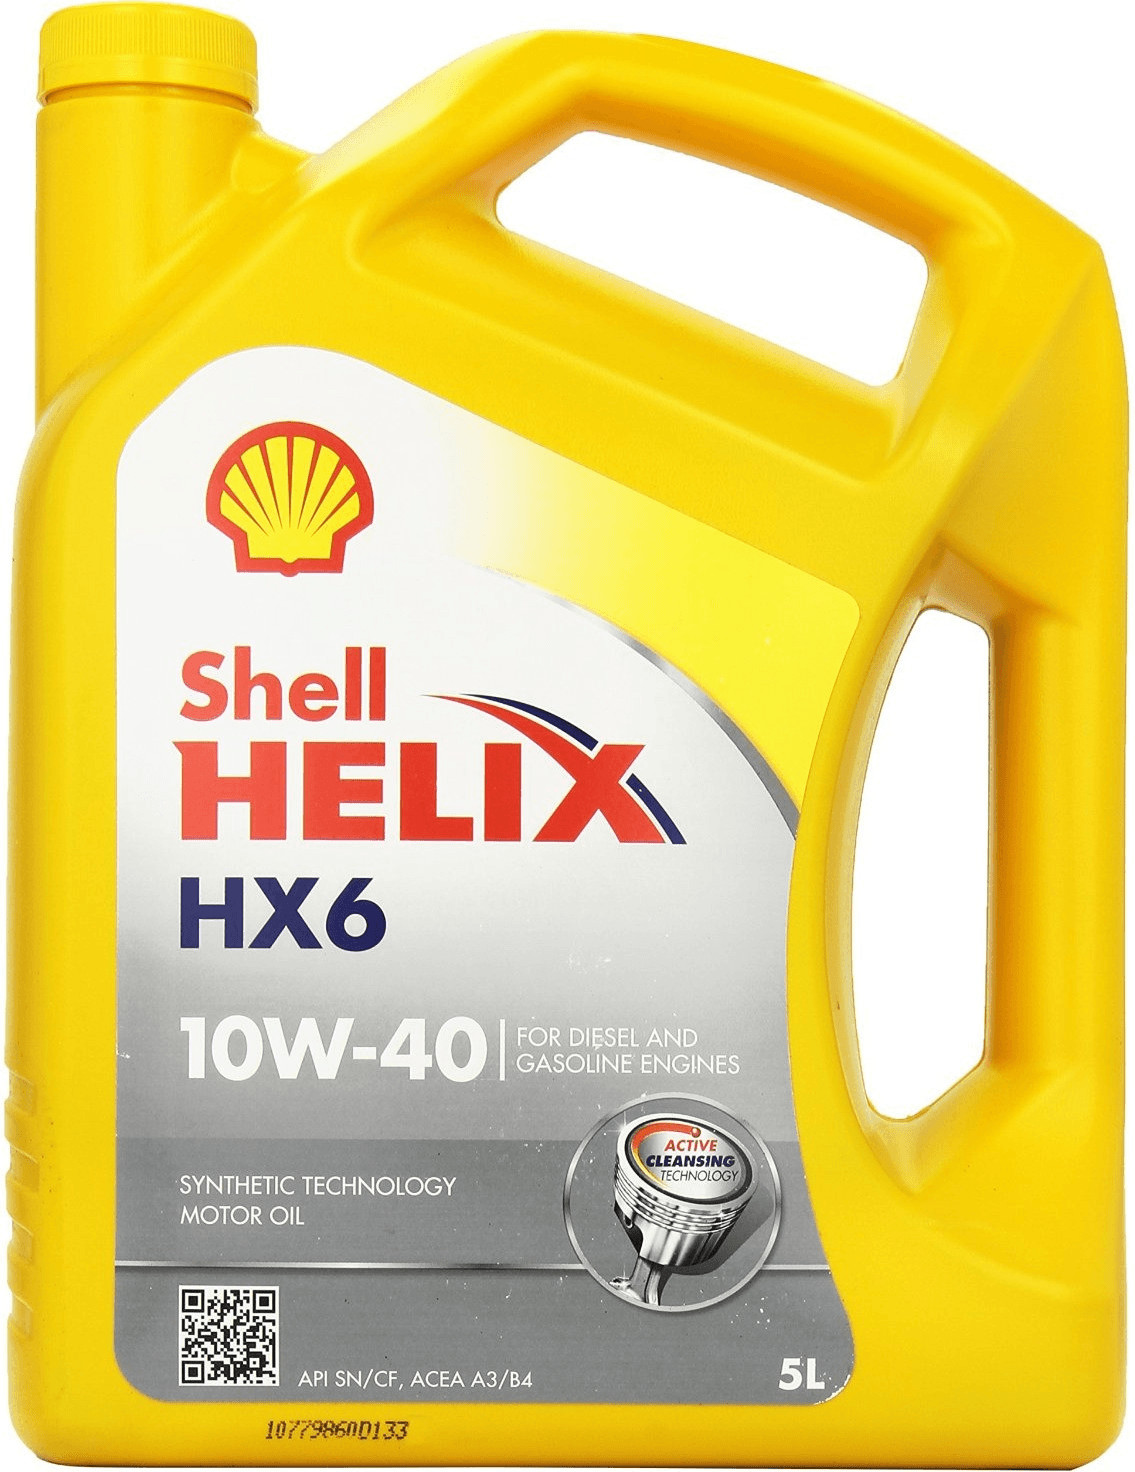 Shell Helix HX6 10W-40 ab 5,50 €